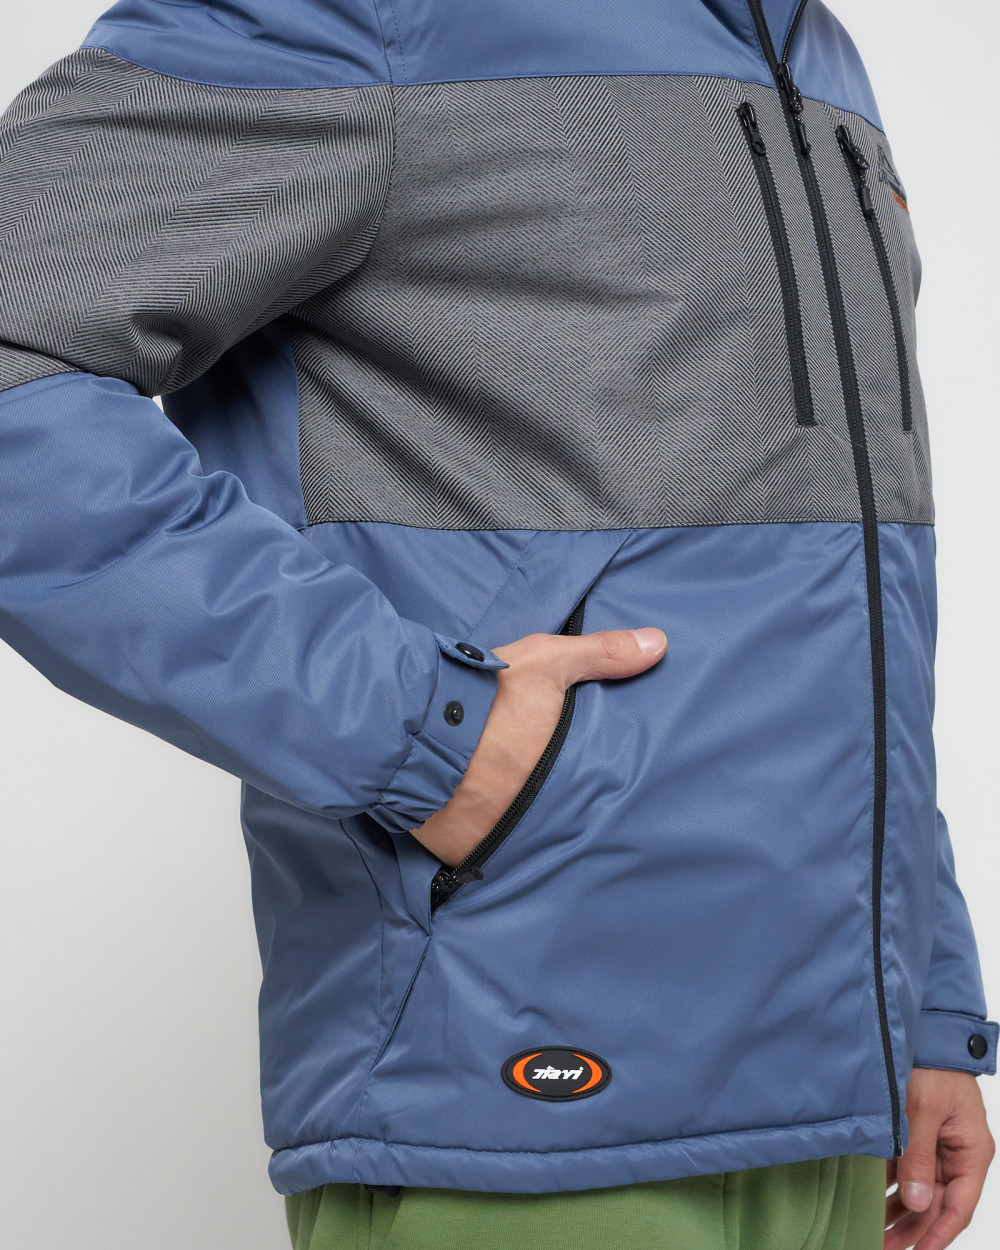 Купить куртку мужскую спортивную весеннюю оптом от производителя недорого в Москве 8808S 1